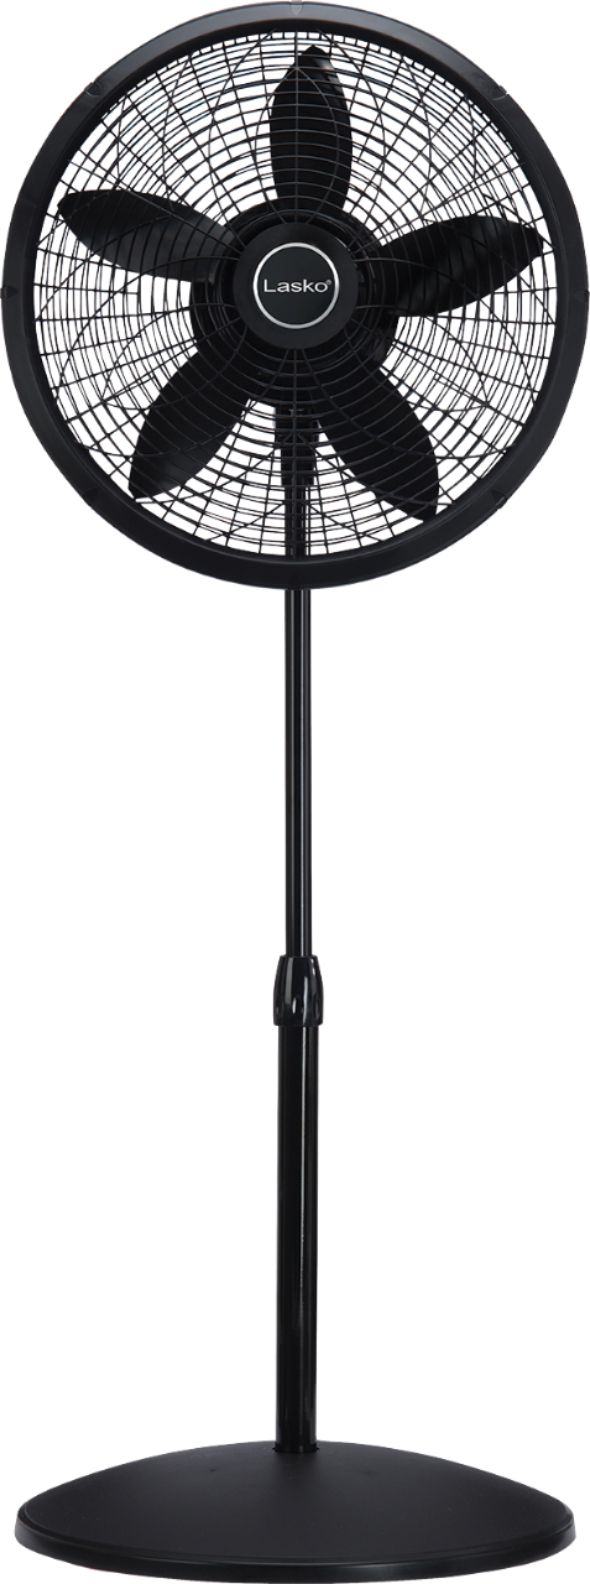 Oscillating Pedestal Fan 16" 3 Speed Lasko Indoor Durable Floor Air Cooler Black 